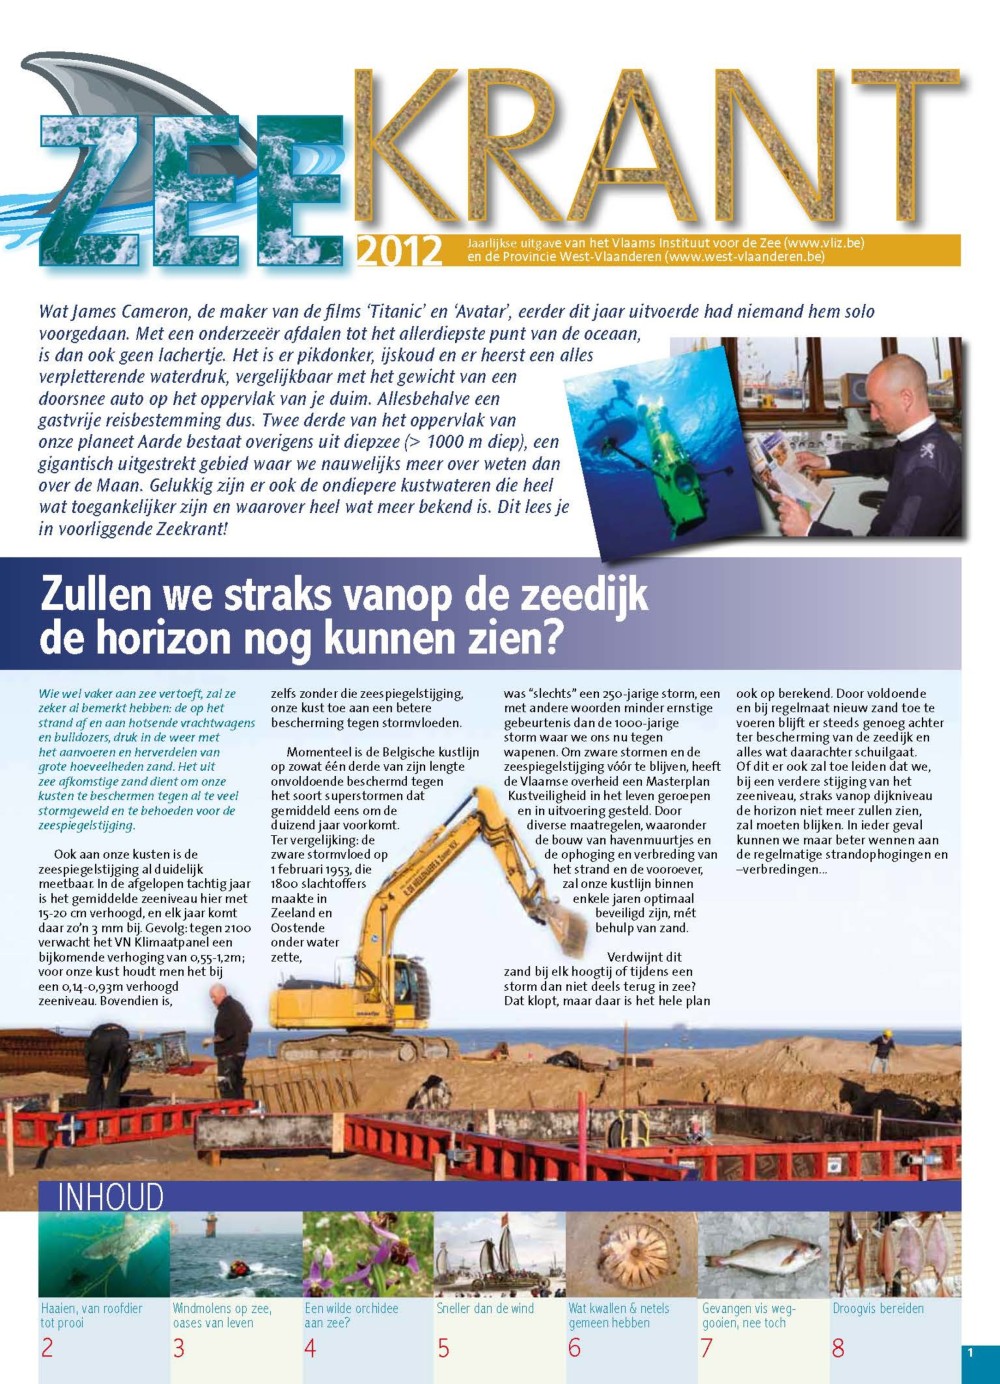 Zeekrant 2012: jaarlijkse uitgave van het Vlaams Instituut voor de Zee en de Provincie West-Vlaanderen